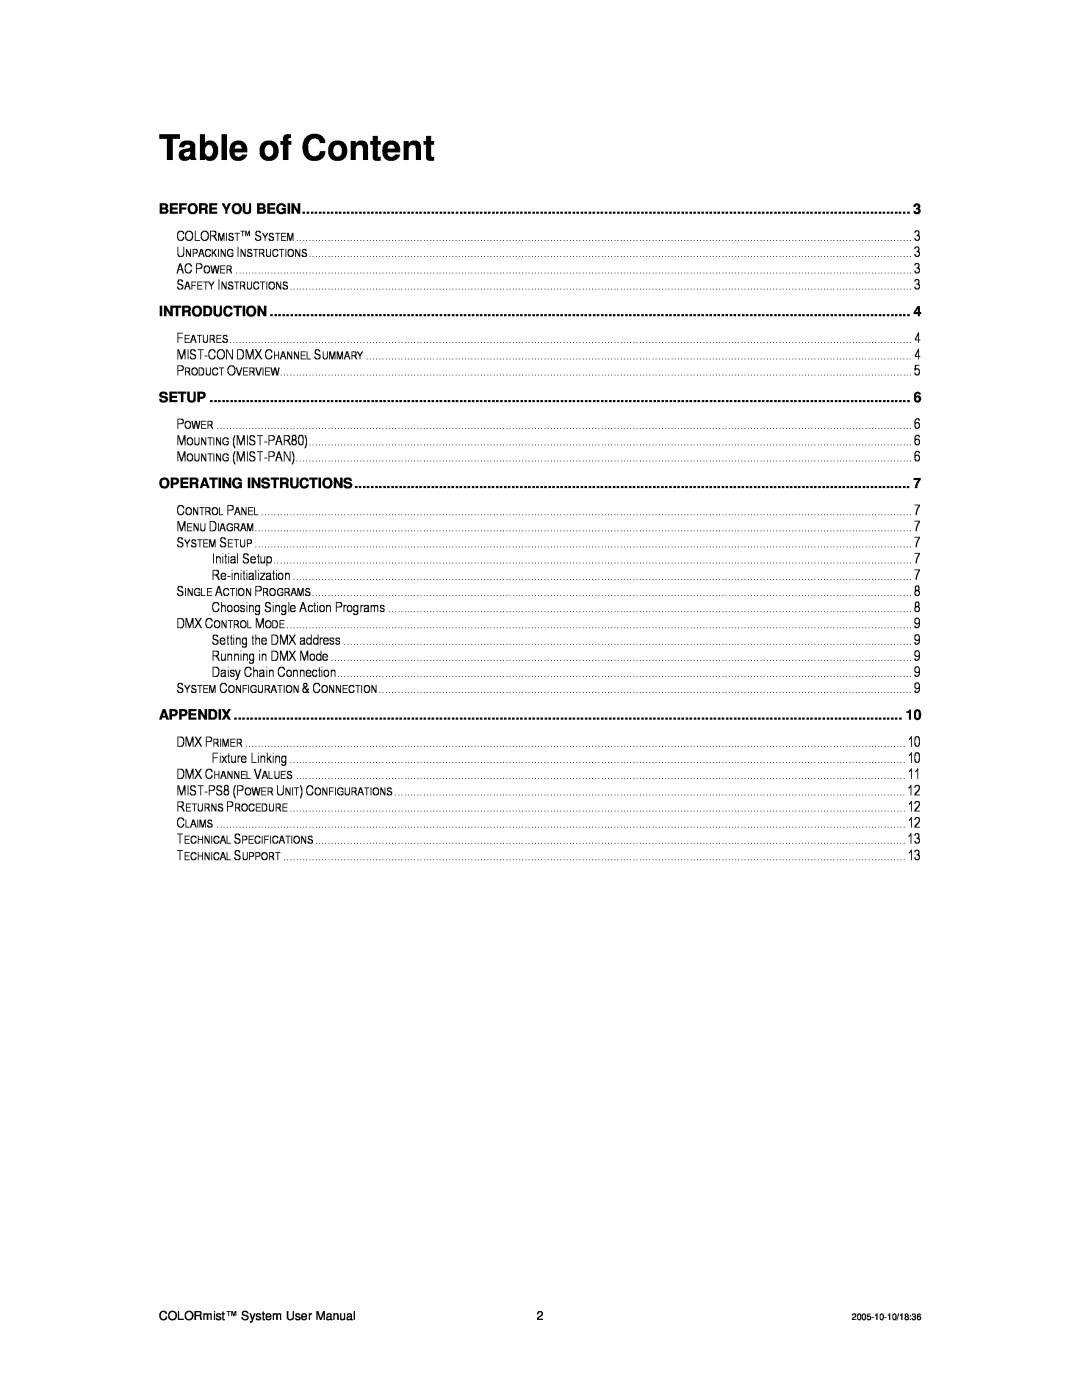 Chauvet MIST-CON, MIST-PAR80 Table of Content, Before You Begin, Introduction, Setup, Operating Instructions, Appendix 